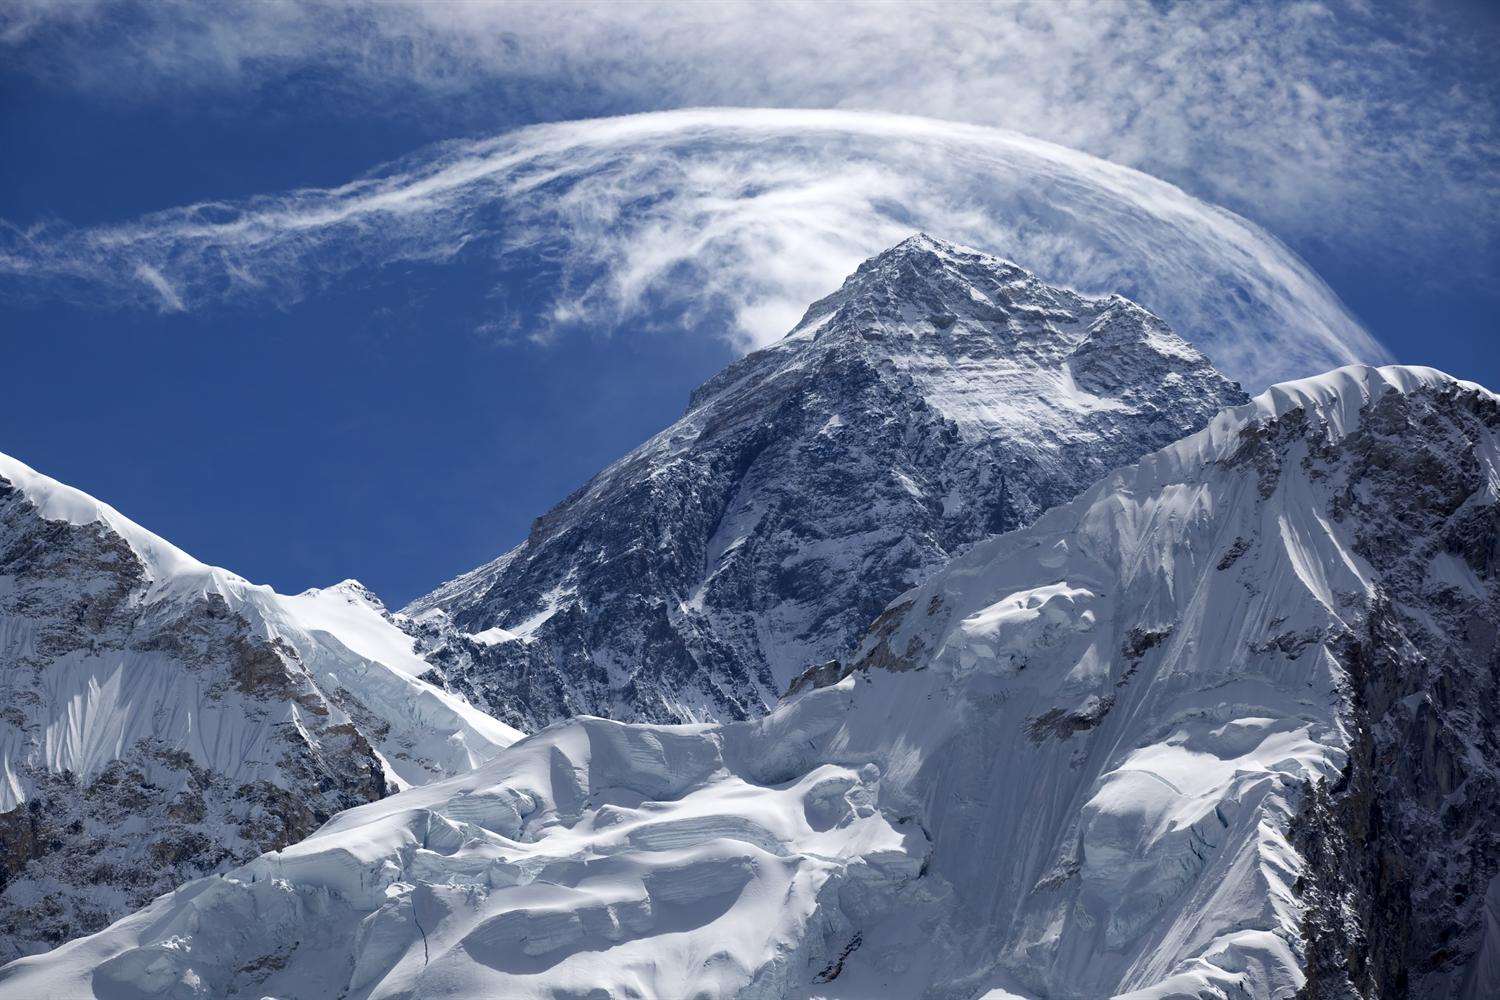 Mount Everest base camp